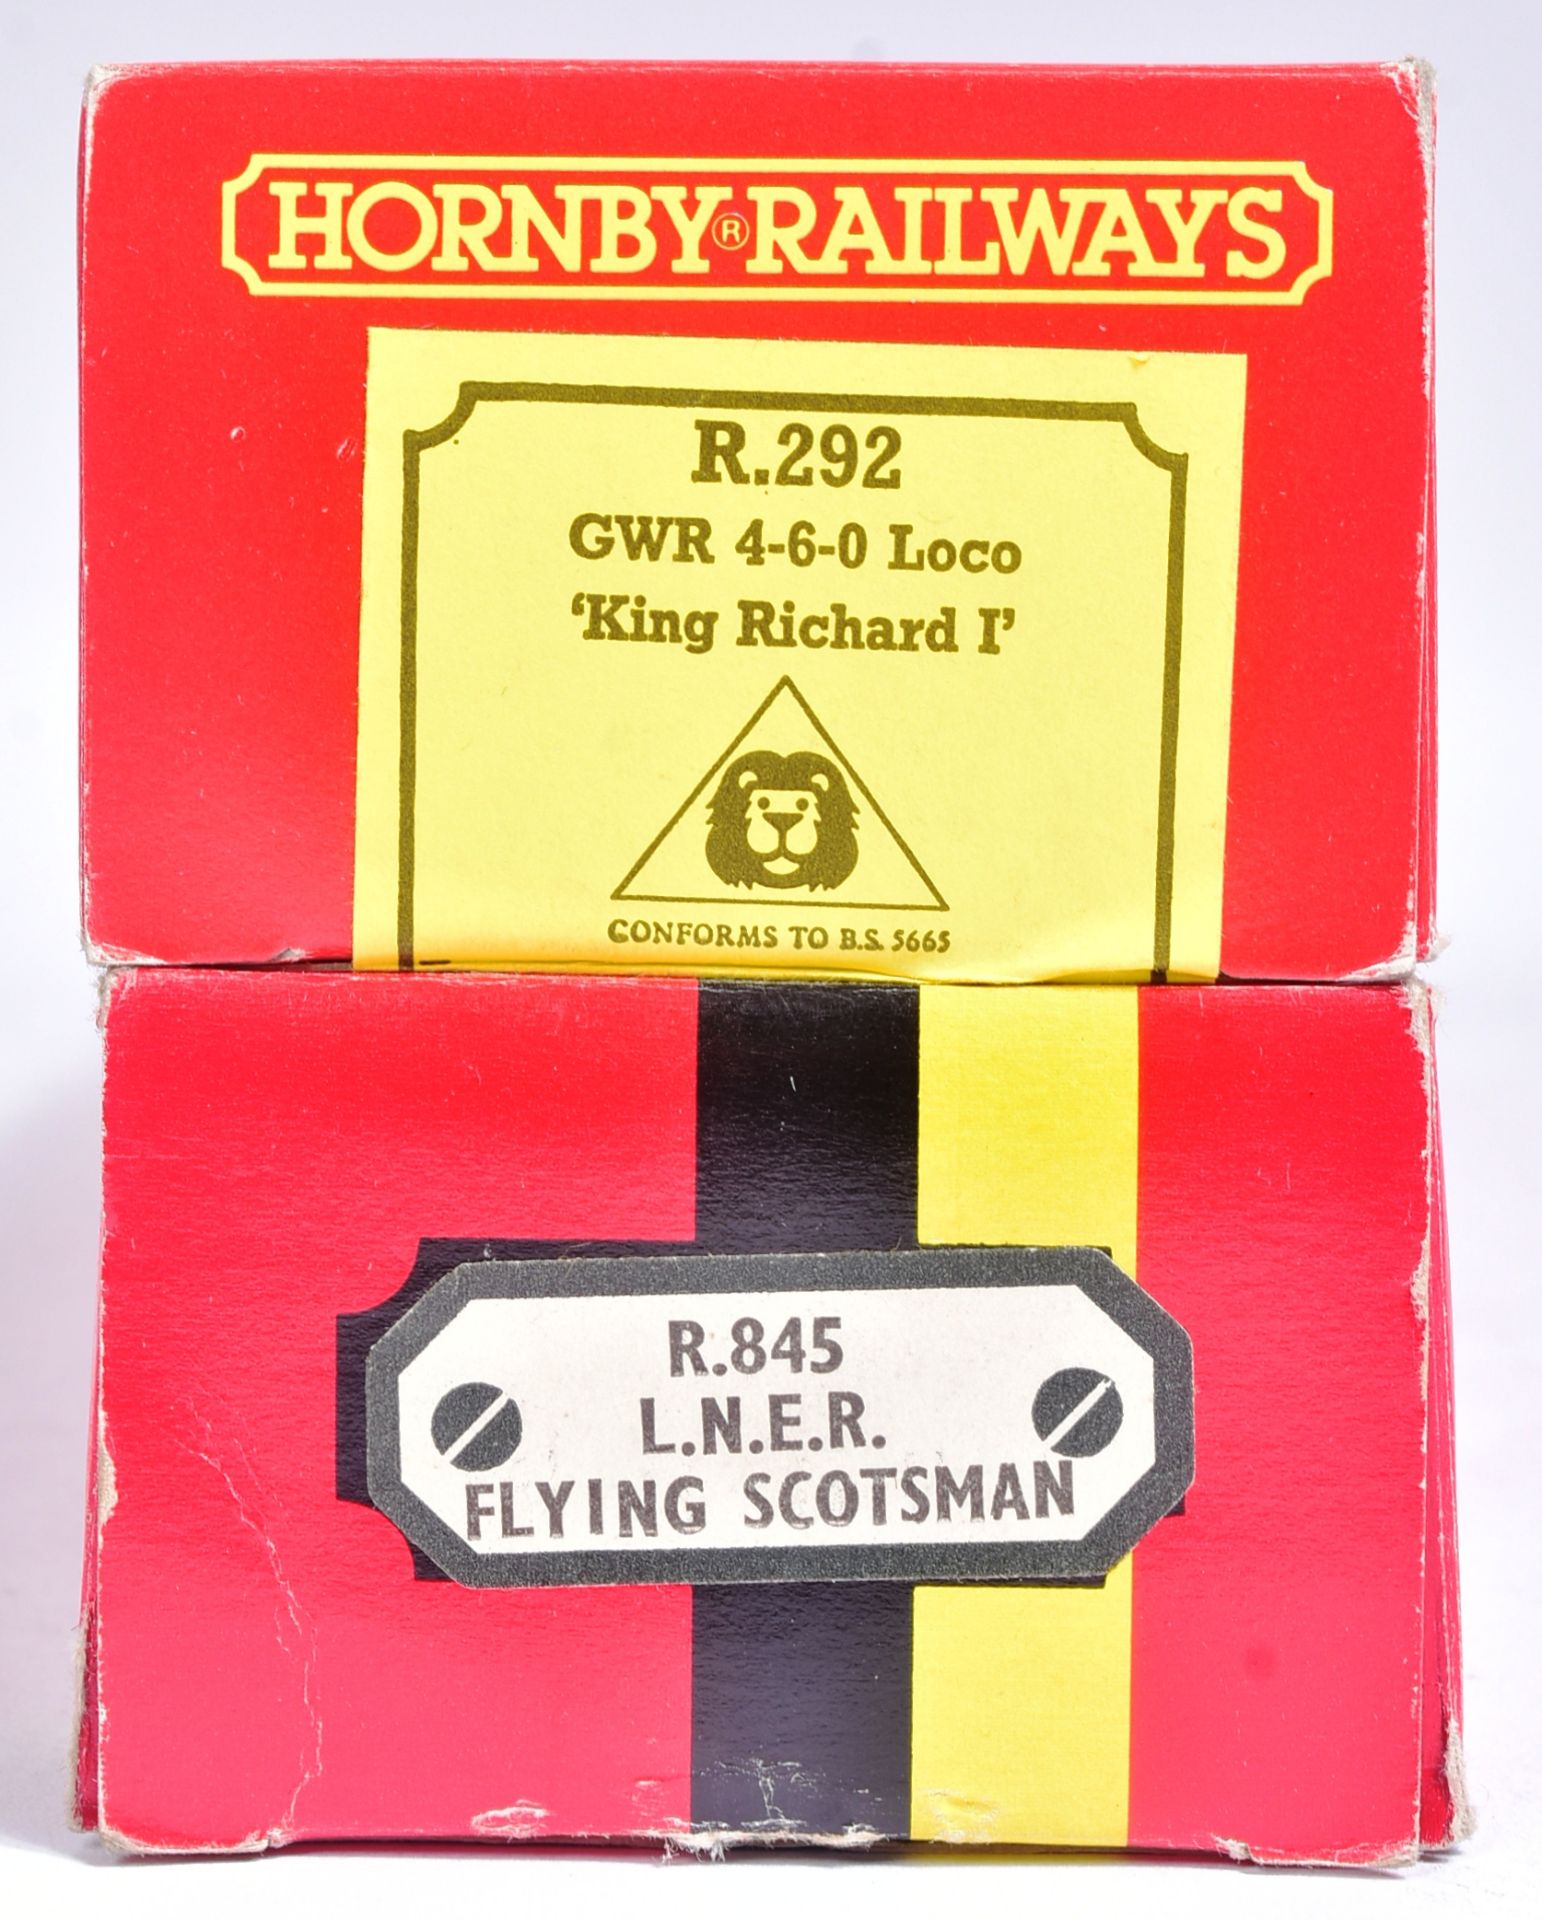 TWO VINTAGE HORNBY OO GAUGE MODEL RAILWAY TRAINSET LOCOMOTIVES - Image 6 of 6